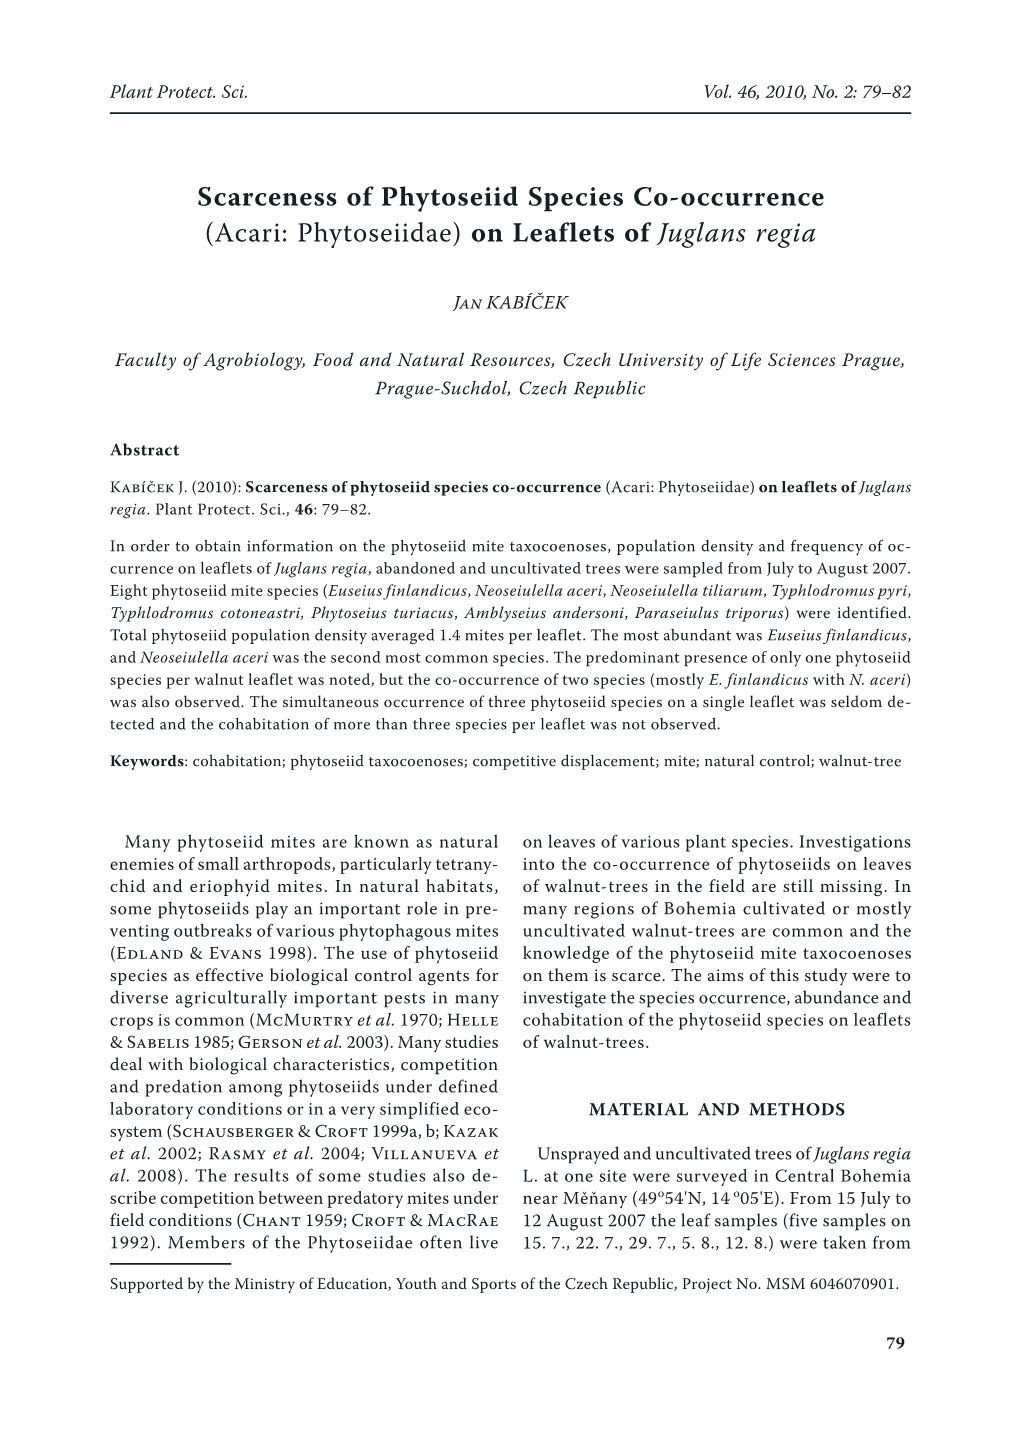 Scarceness of Phytoseiid Species Co-Occurrence (Acari: Phytoseiidae) on Leaflets of Juglans Regia